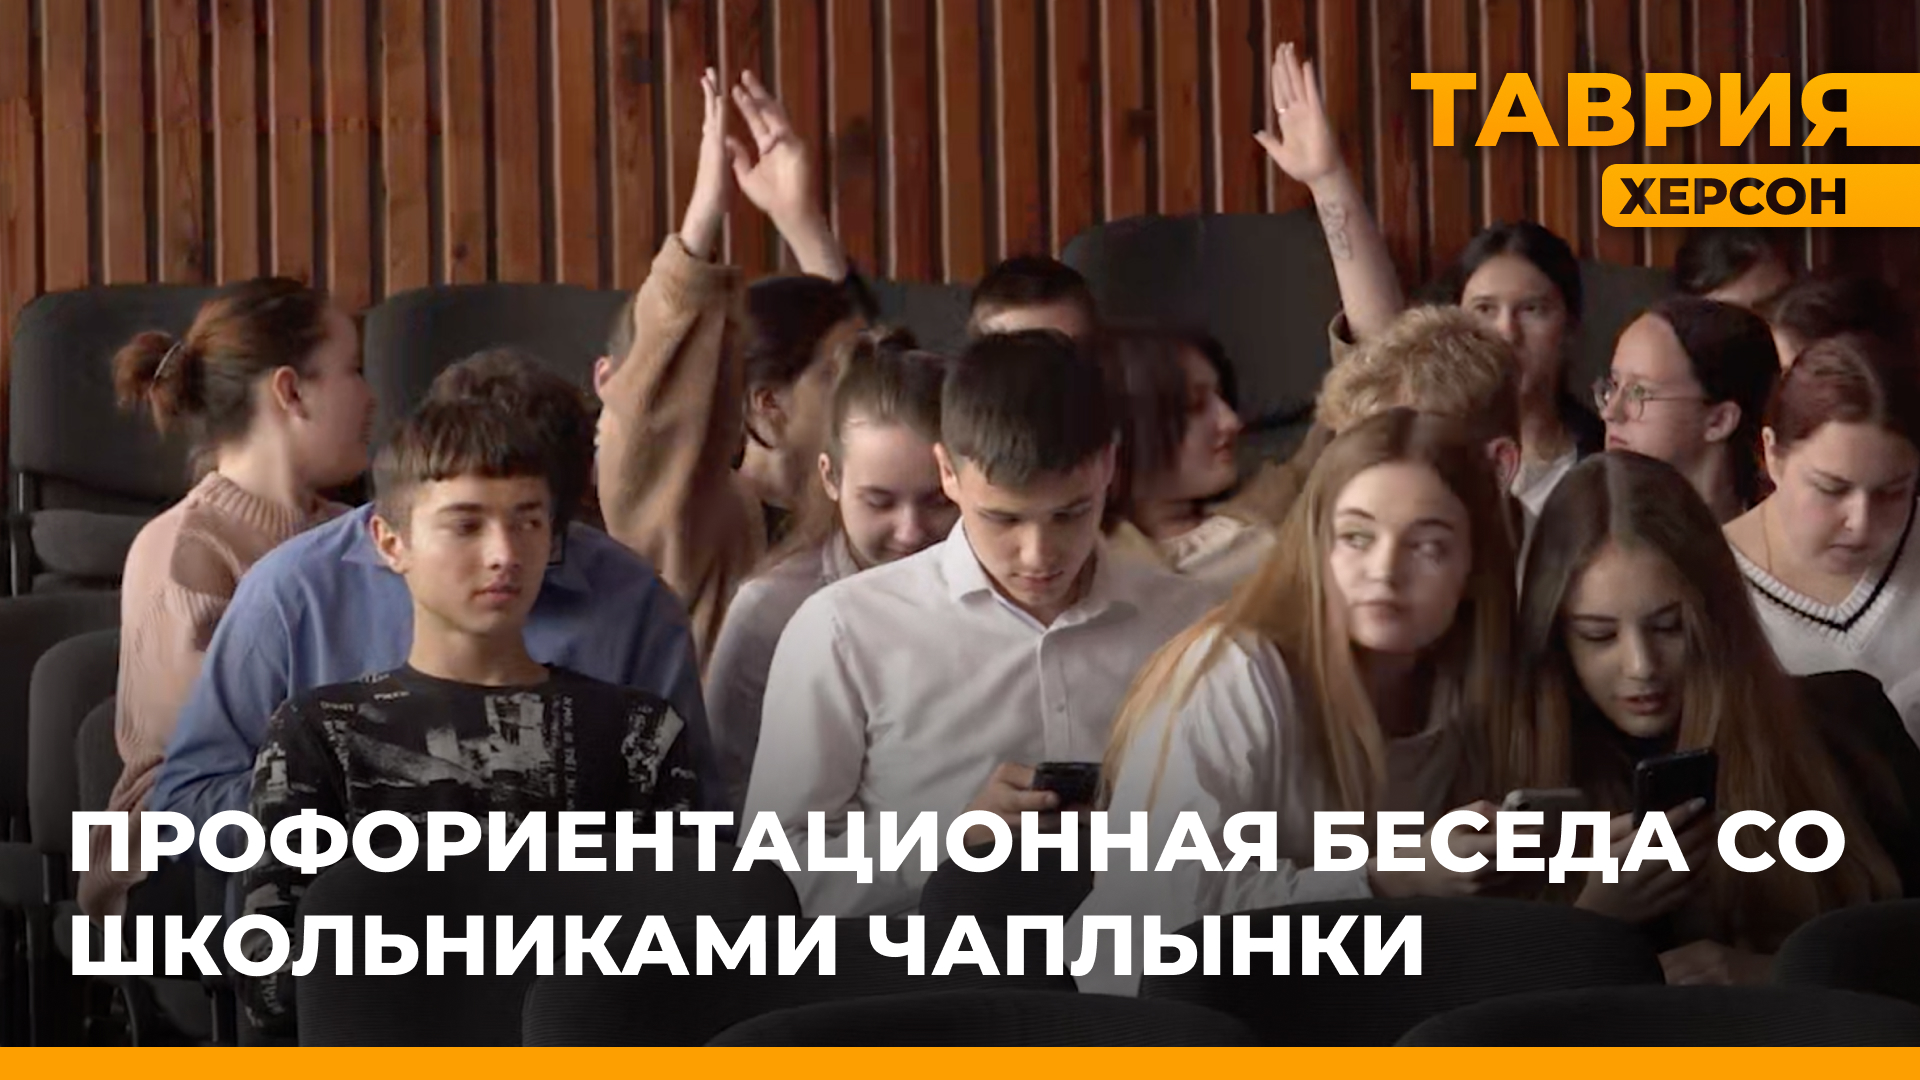 Специалисты министерства молодежной политики Херсонской области встретились со школьниками Чаплынки